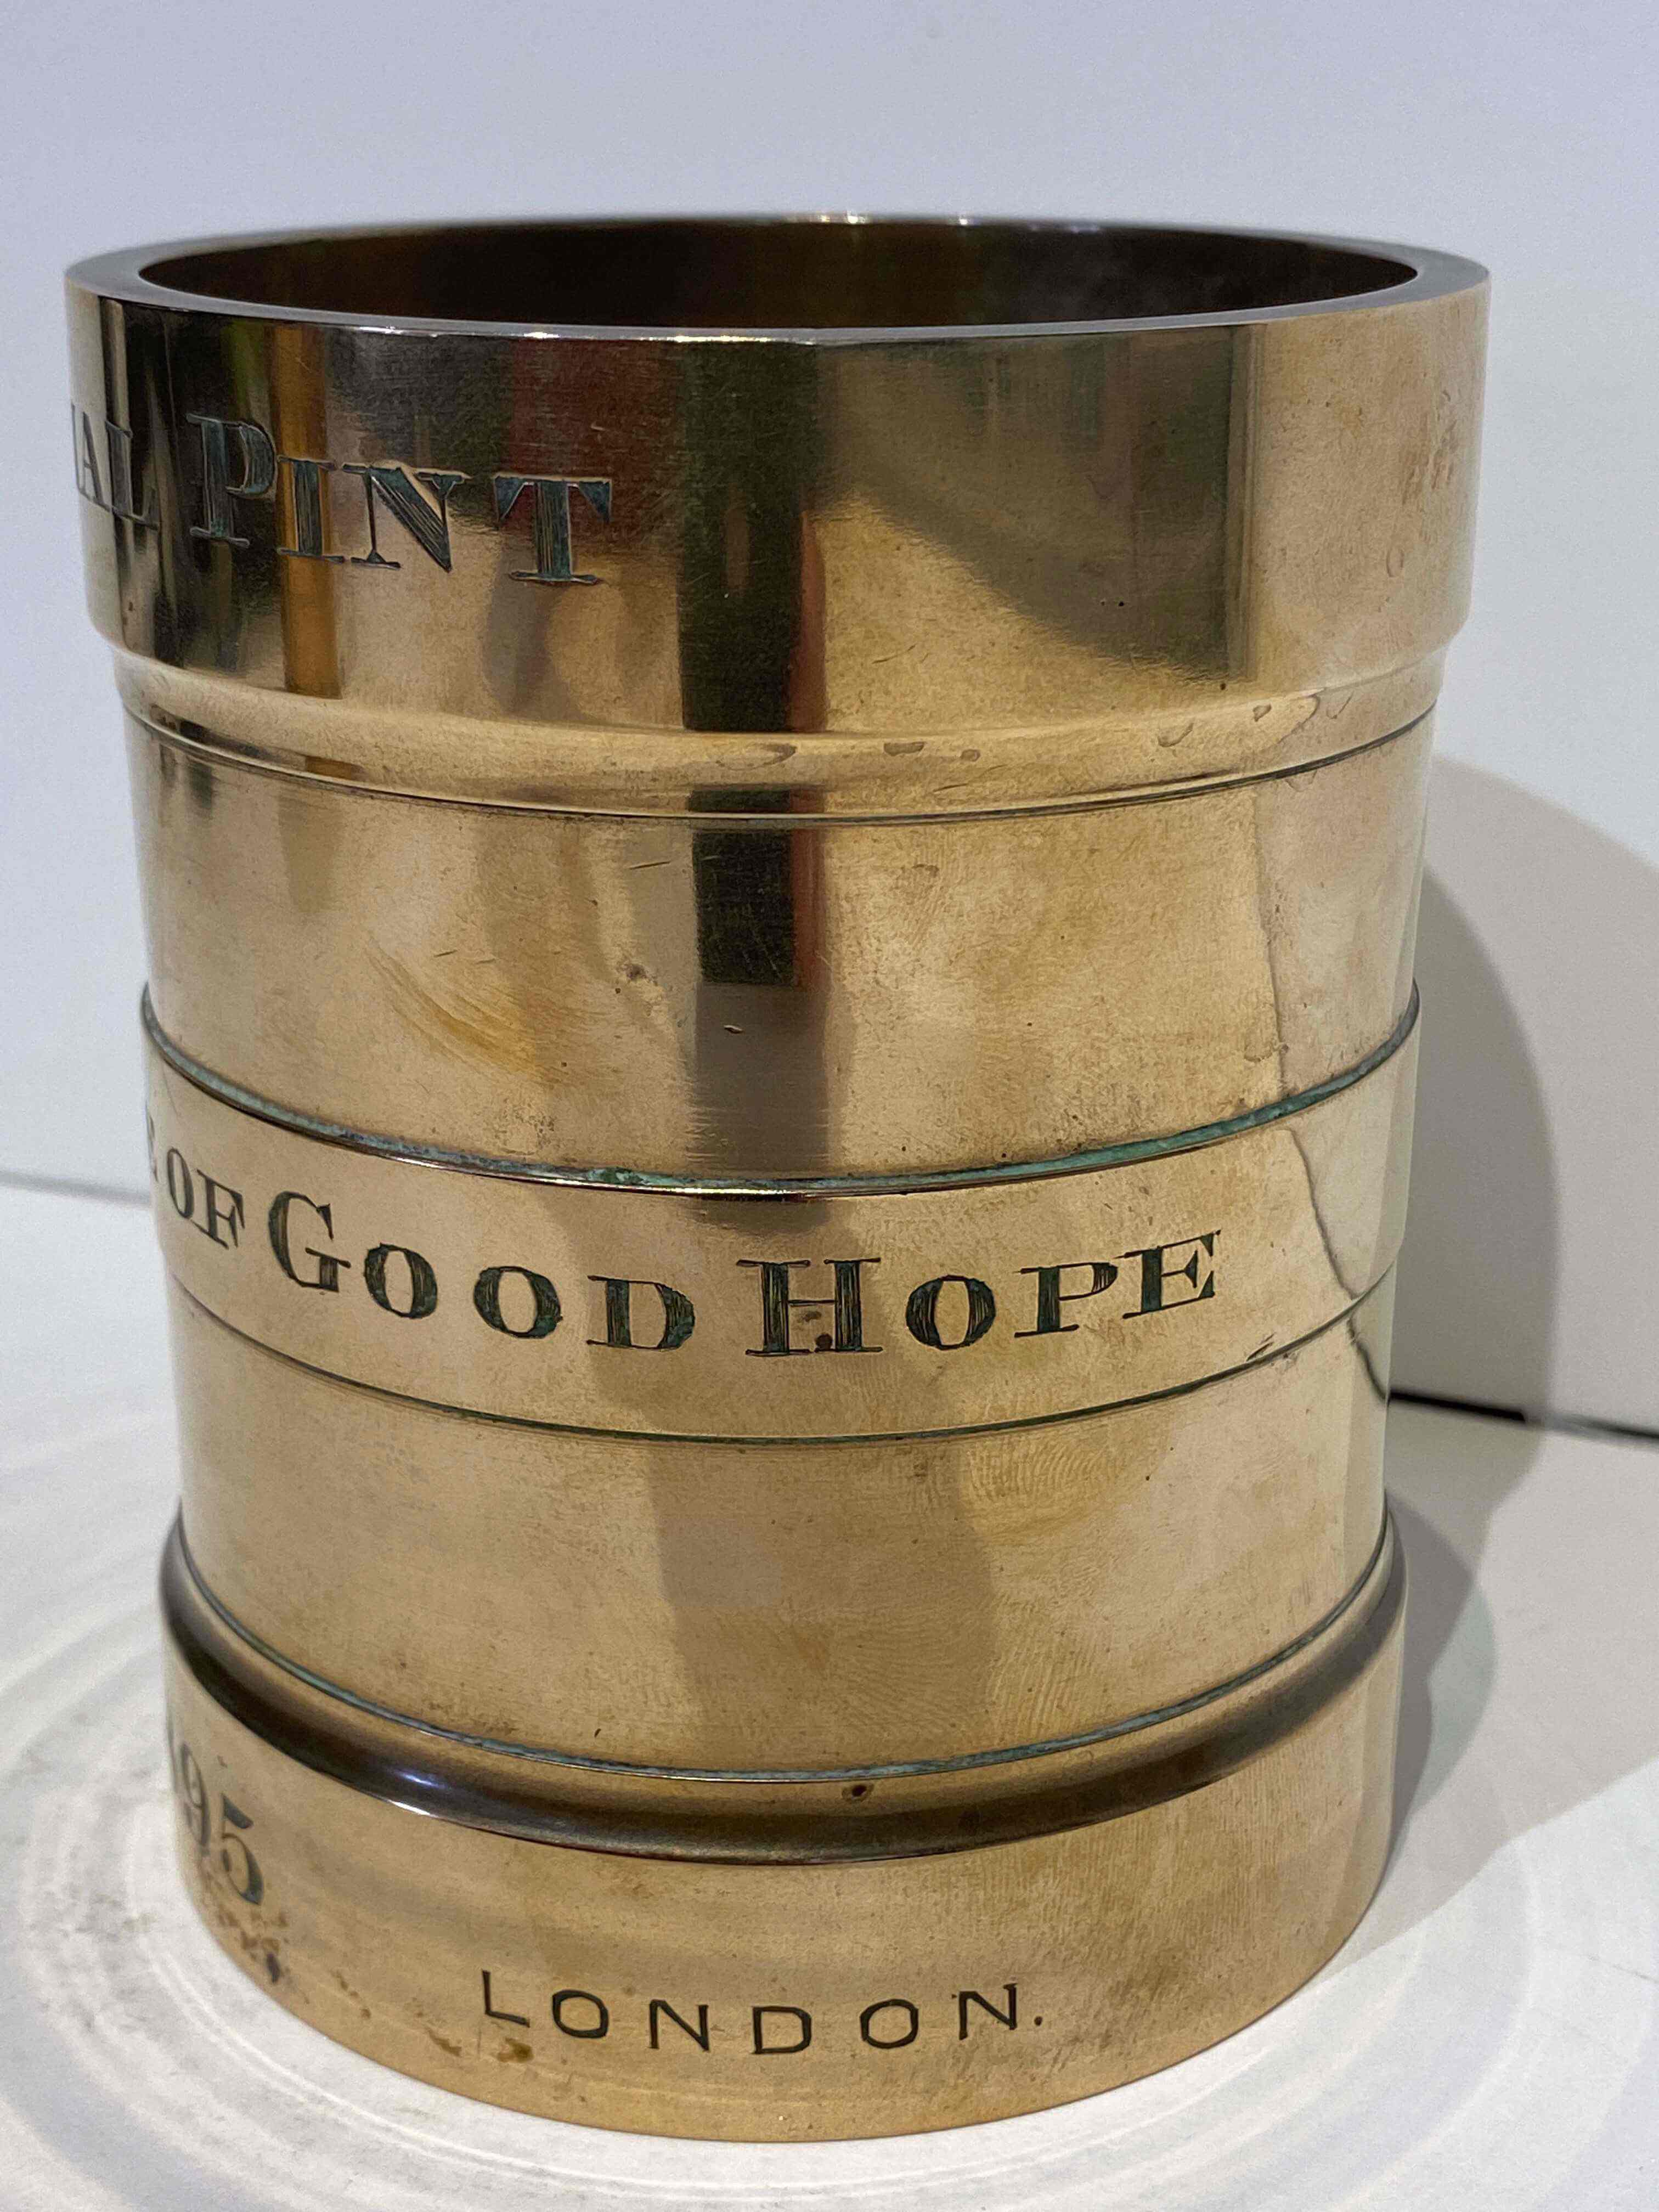 A Cape of Good Hope Imperial Pint brass measure, De Grave & Co, London, 1895